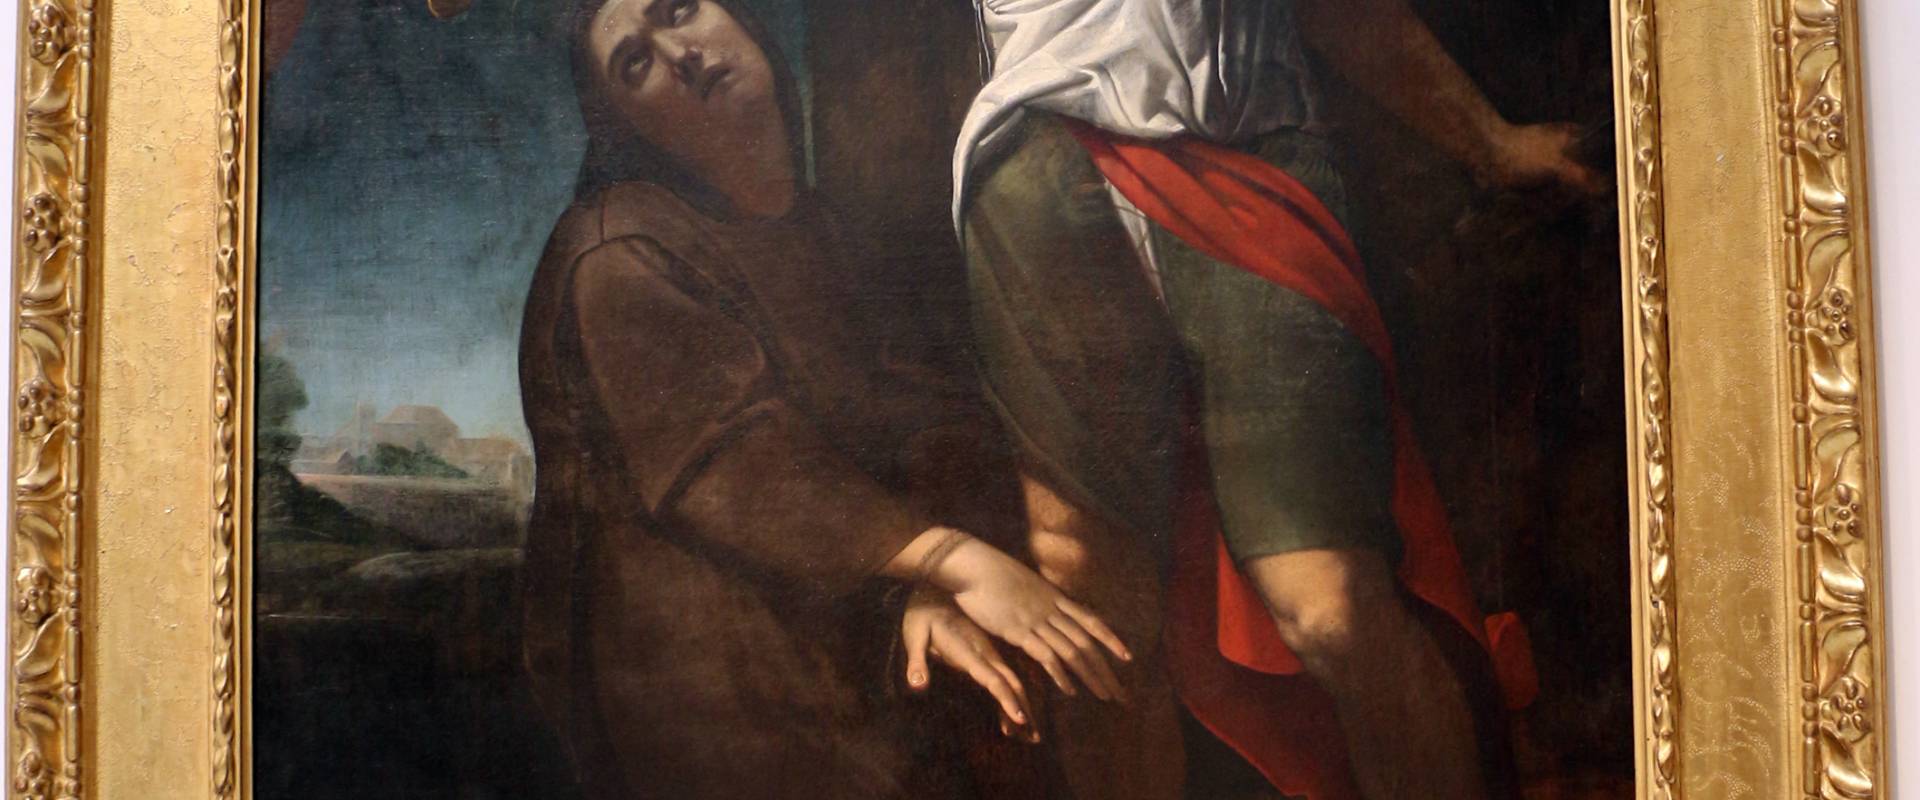 Giovan giacomo sementi, martirio di s. eugenia, 1612-13 ca., da s. martino maggiore photo by Sailko